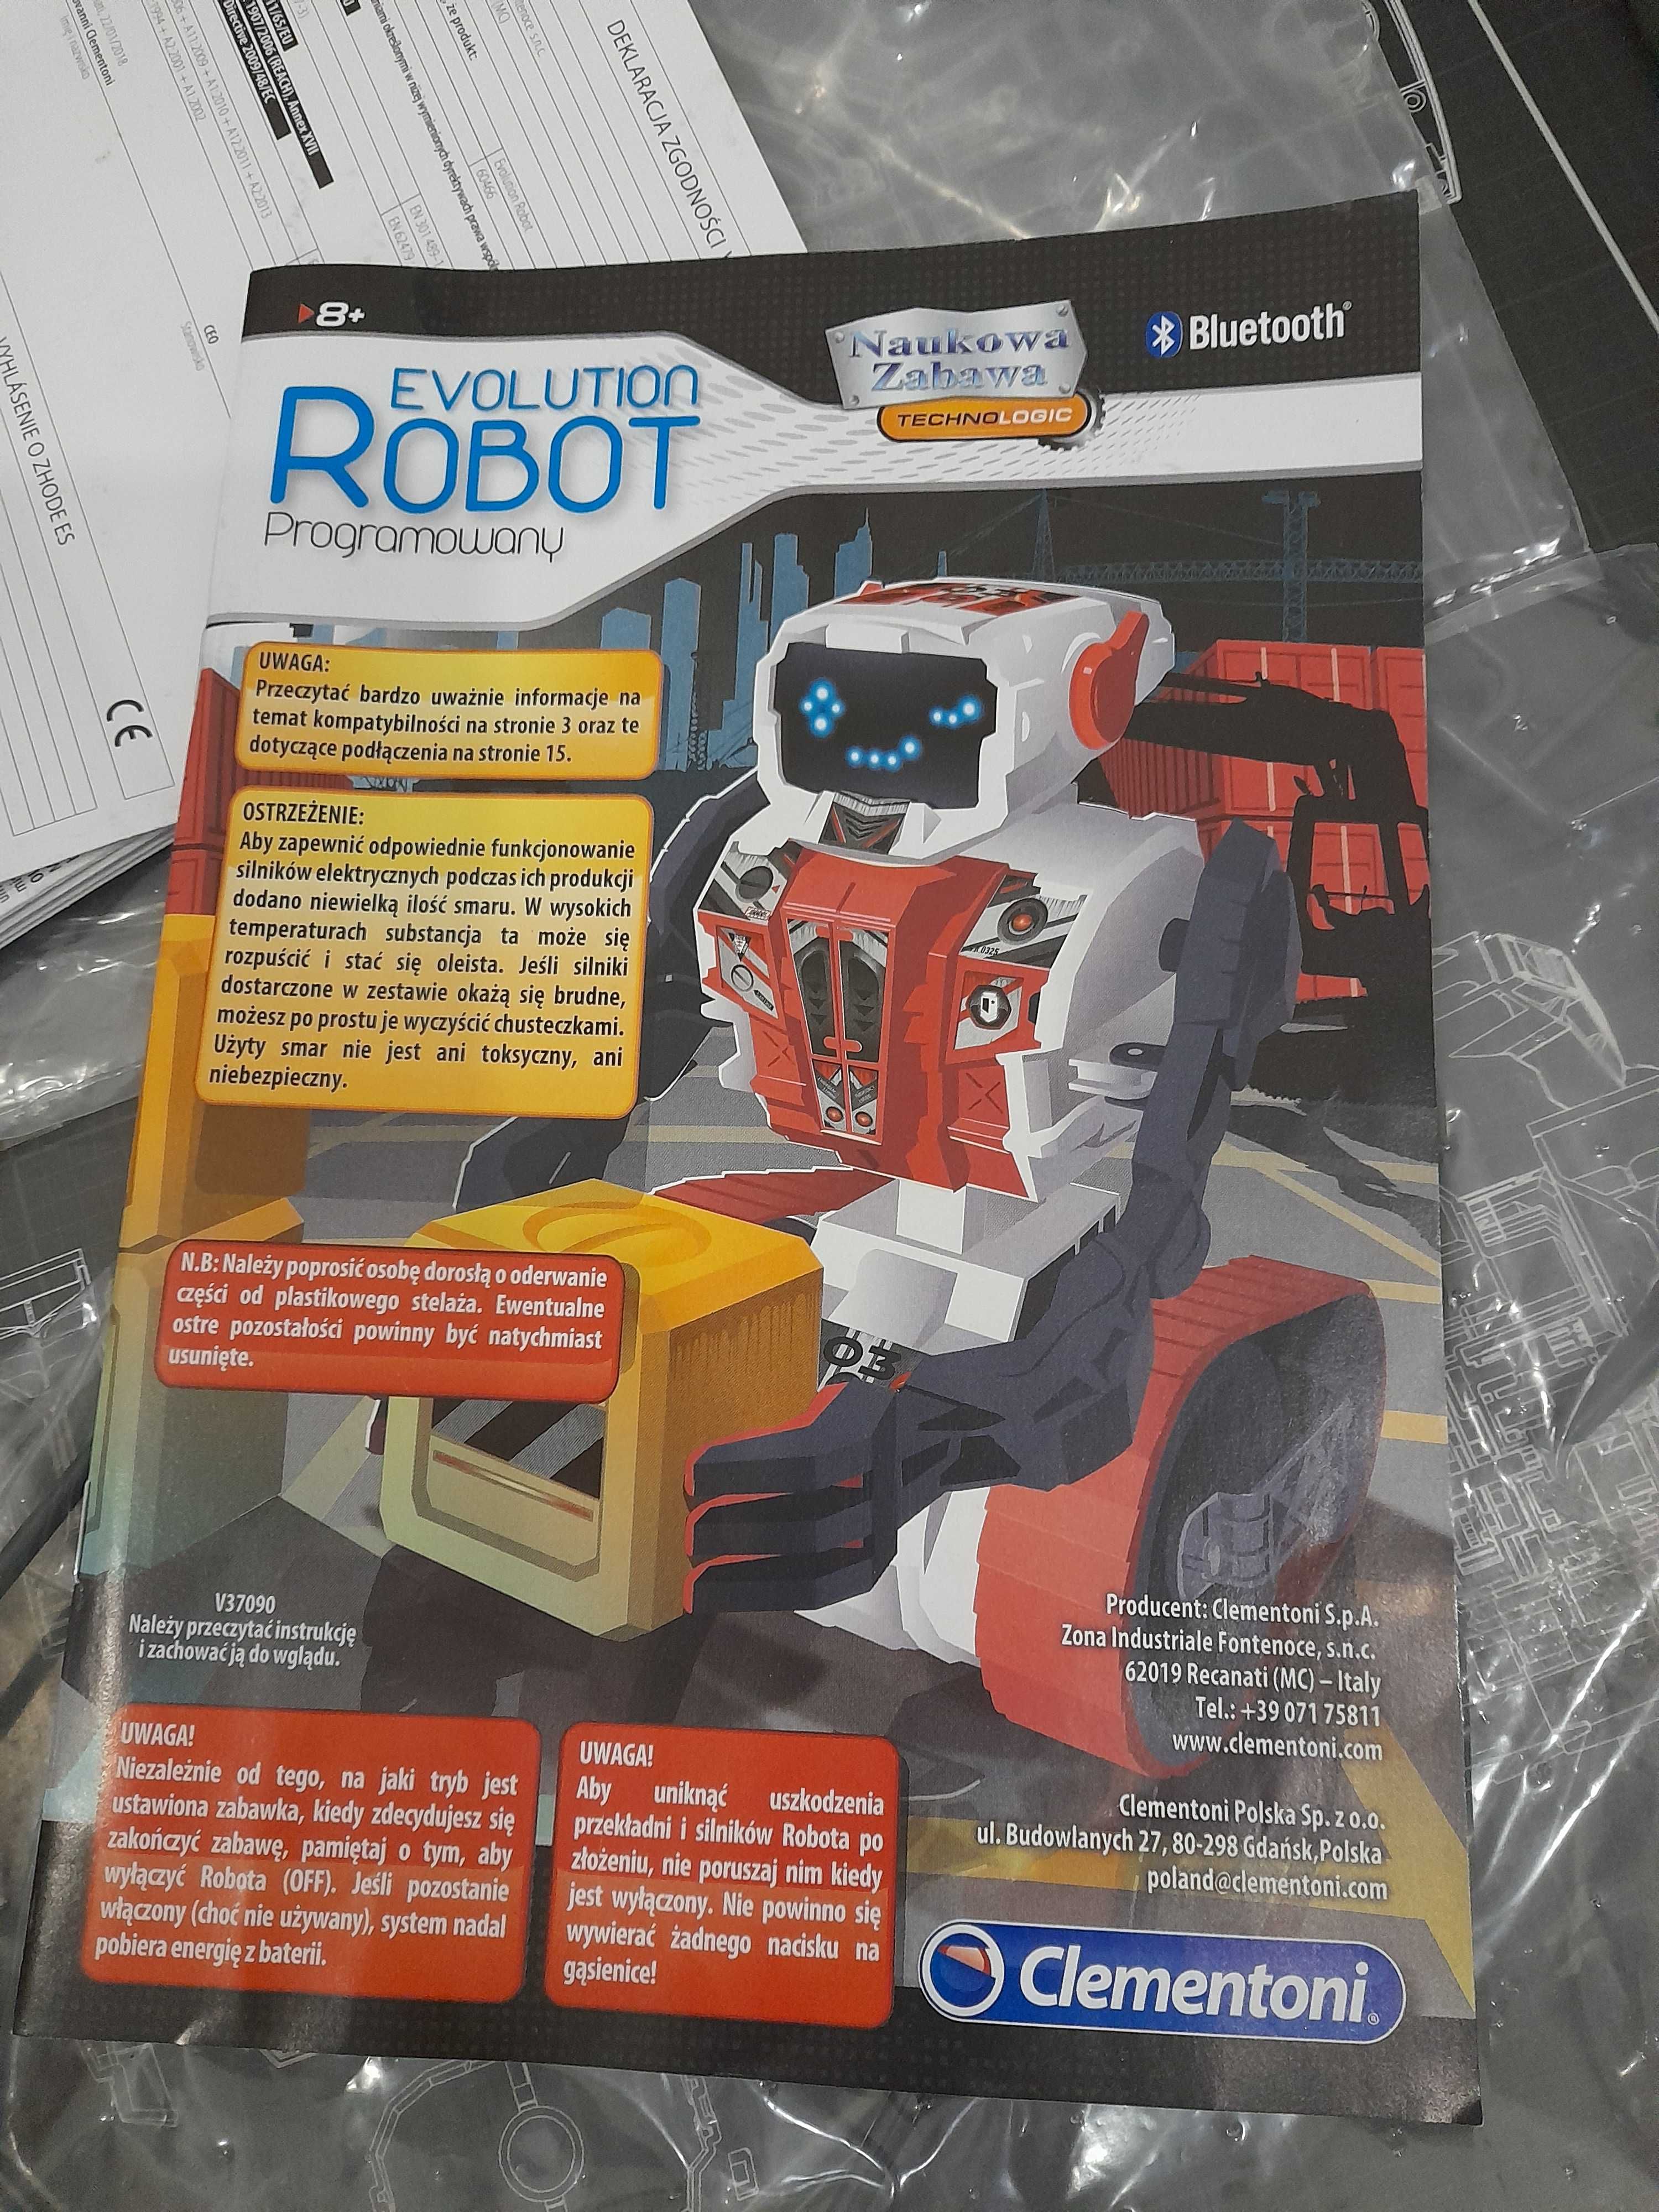 Evolution Robot Clementoni 8+, zdalnie sterowany robot